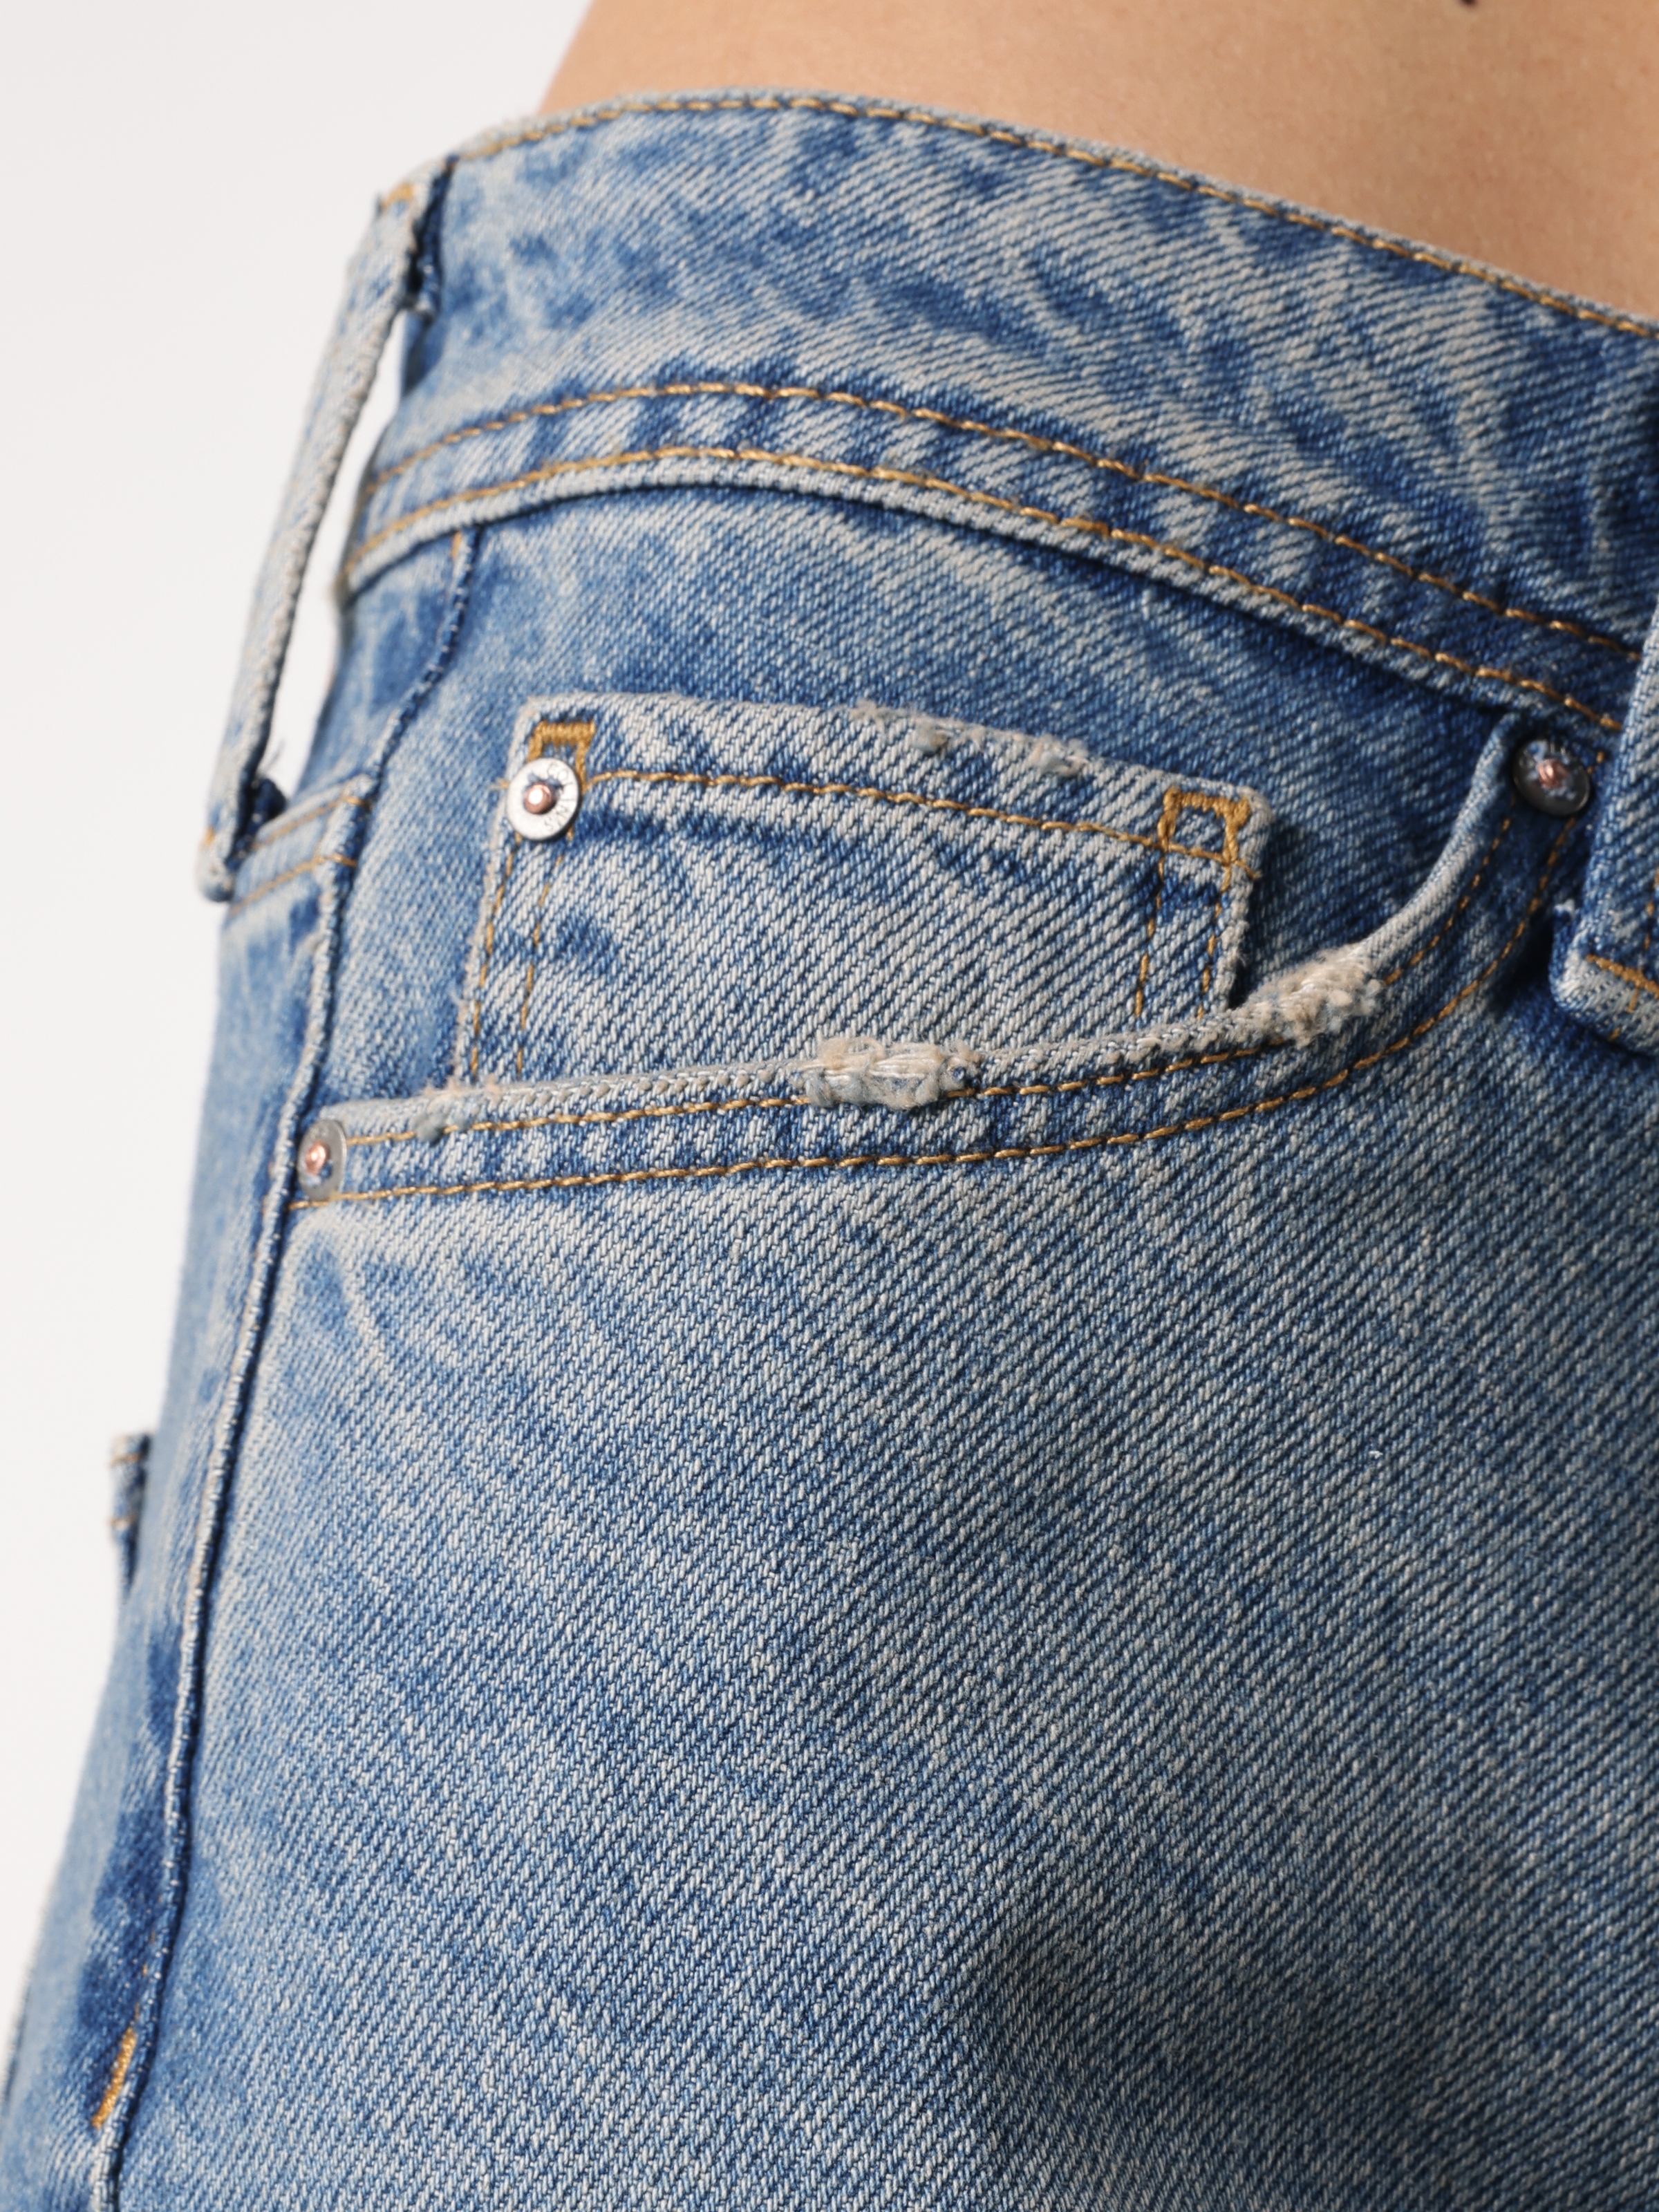 Afficher les détails de 792 Mıla Coupe Régulière Taille Moyenne Jambe Droite Bleu Pantalon En Jean Pour Femme